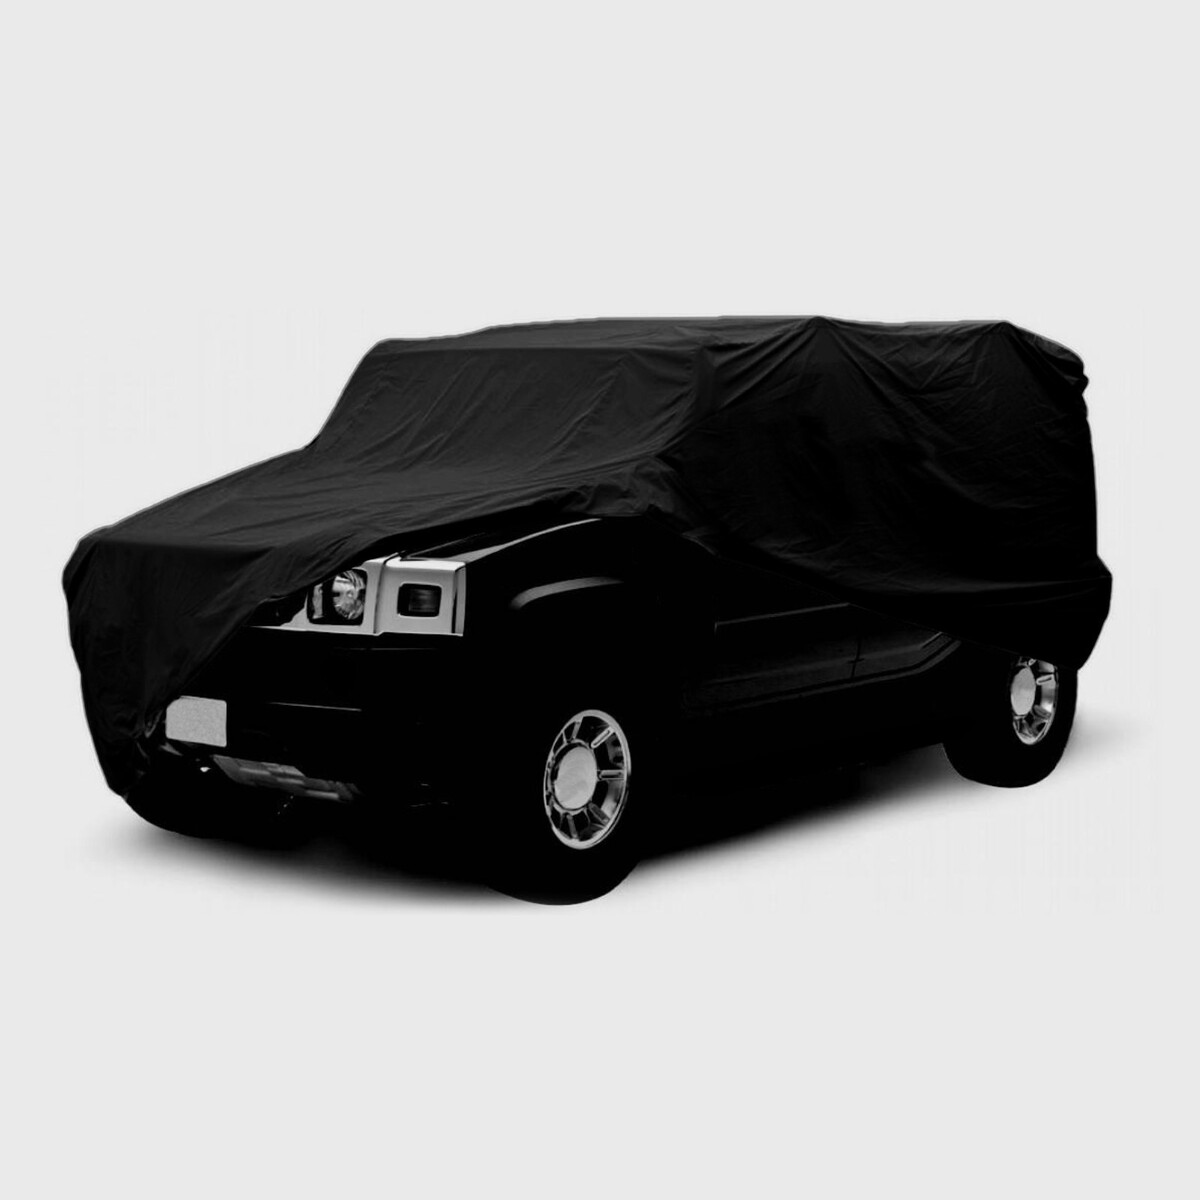 Тент автомобильный cartage premium, внедорожник, 530×200×150 см тент автомобильный cartage premium внедорожник 530×200×150 см